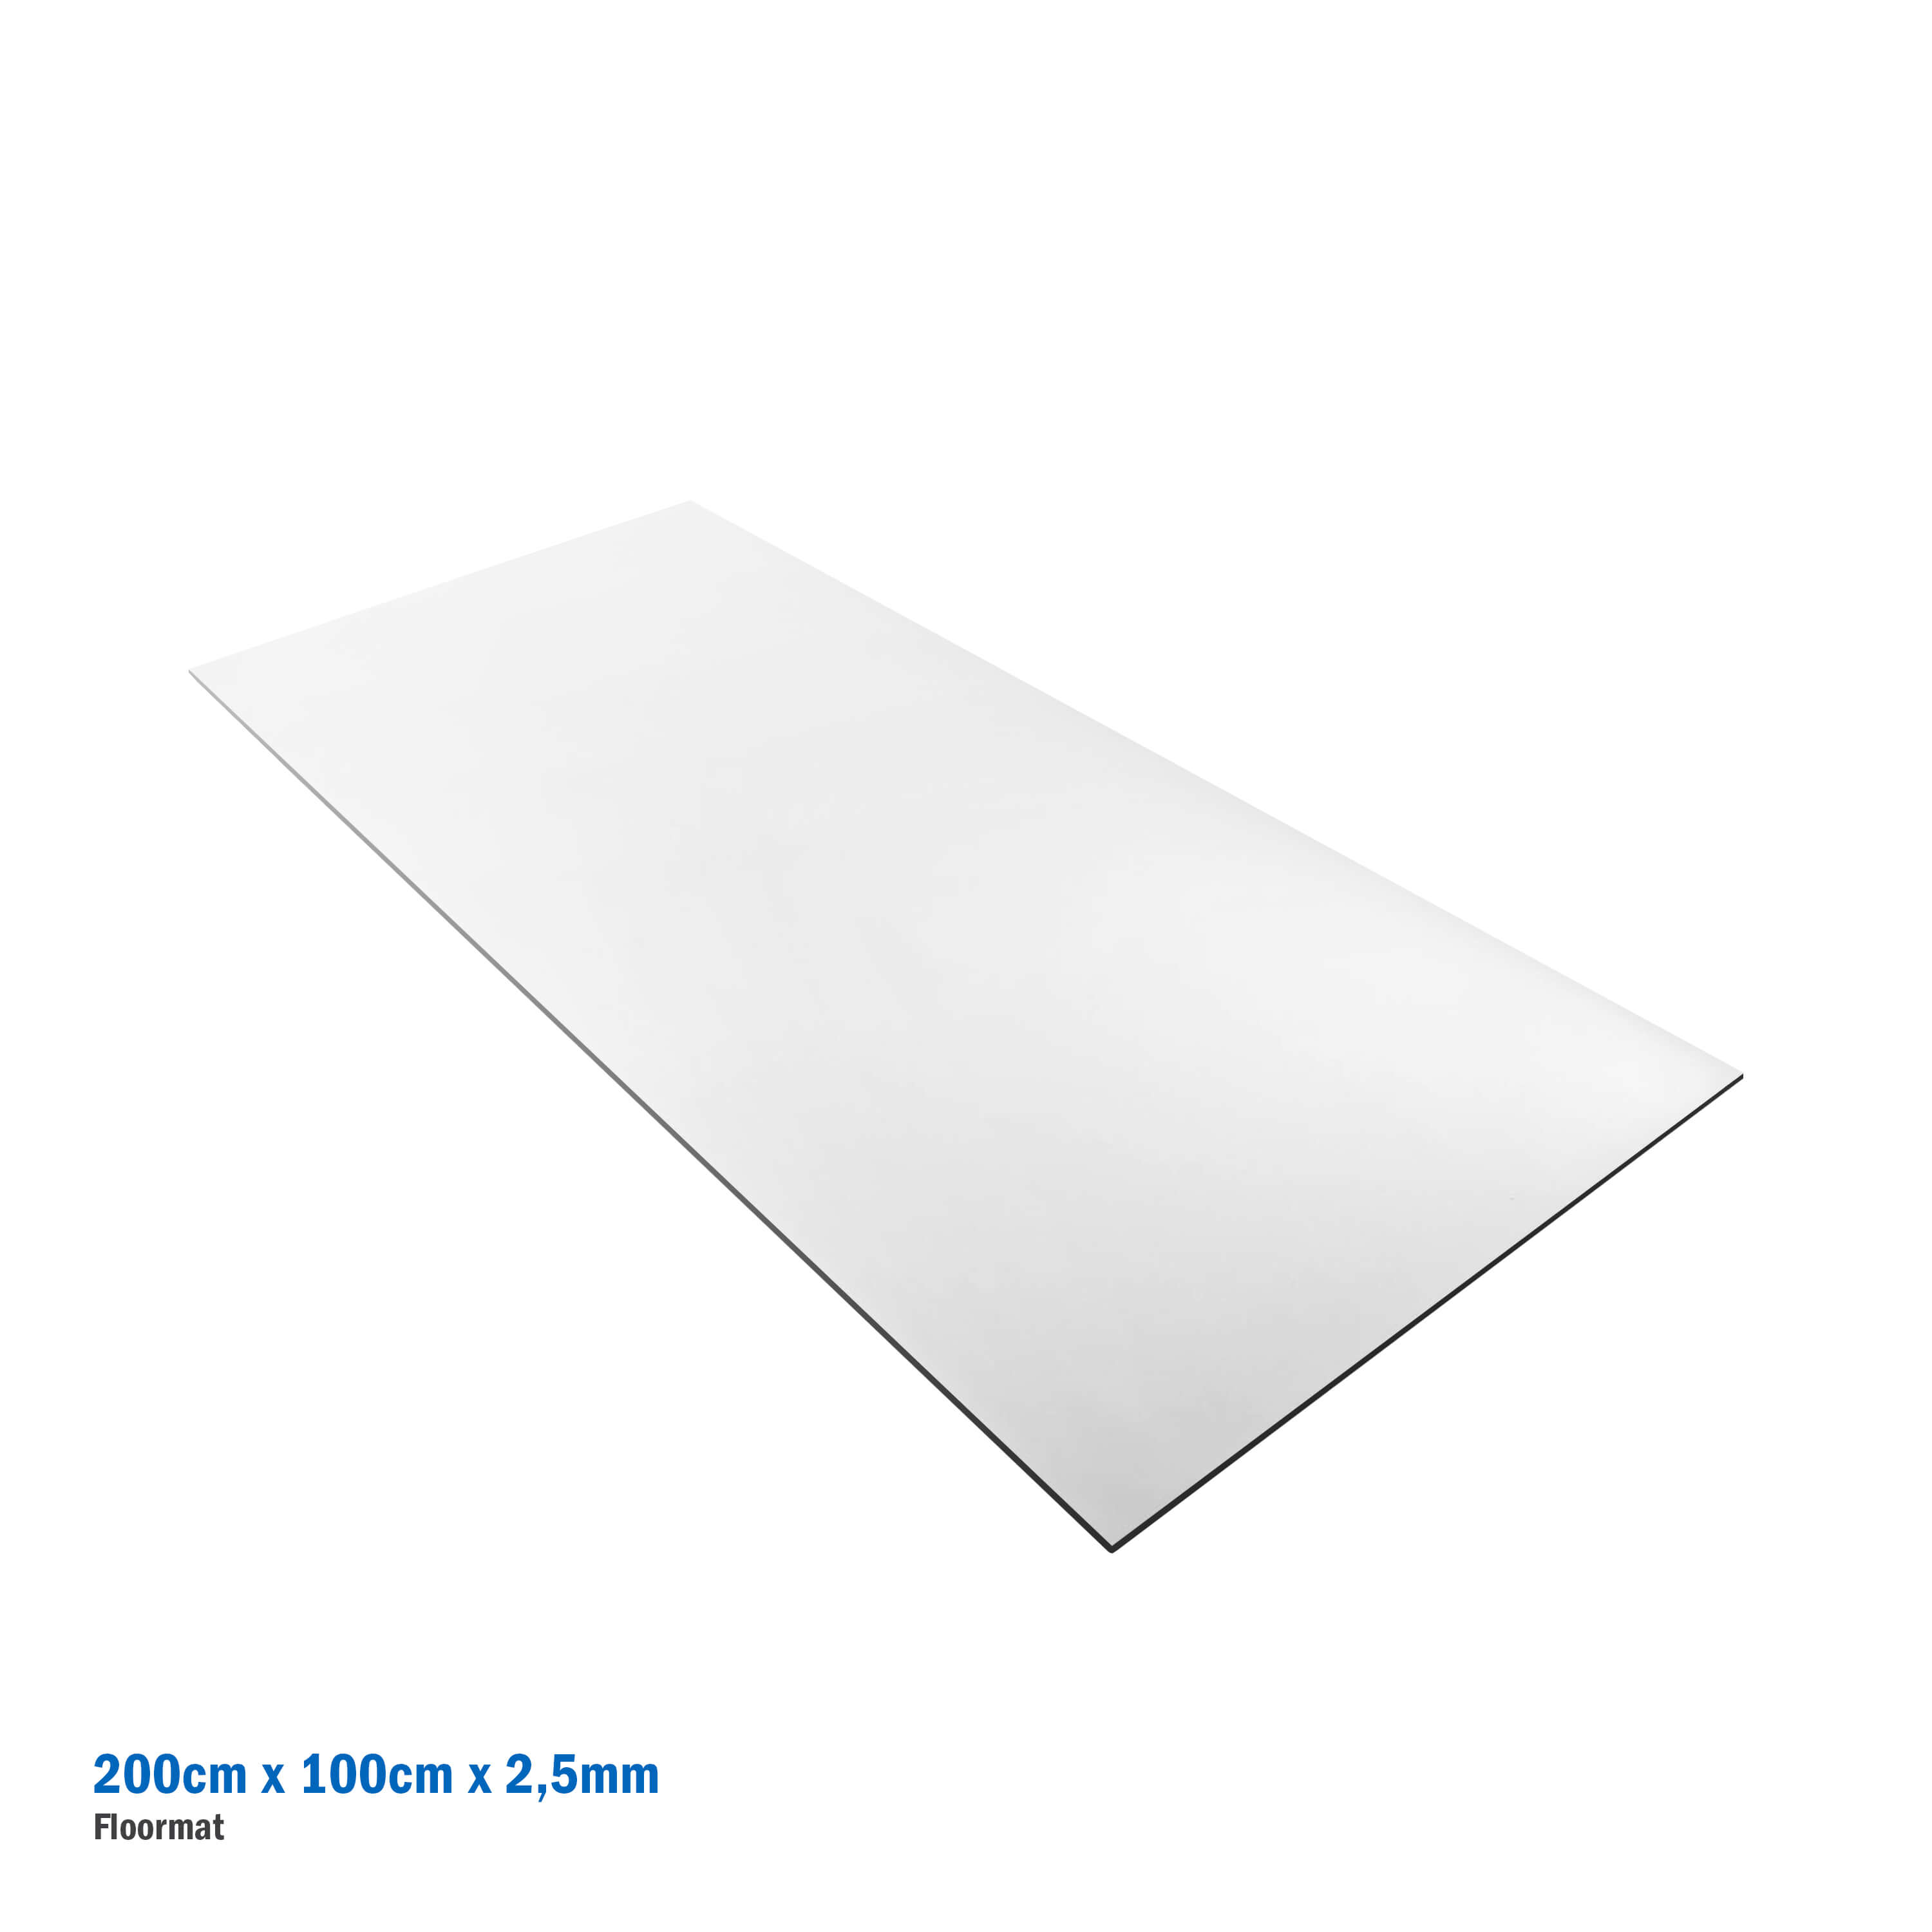 Sublimation Floormat - 200 x 100 cm